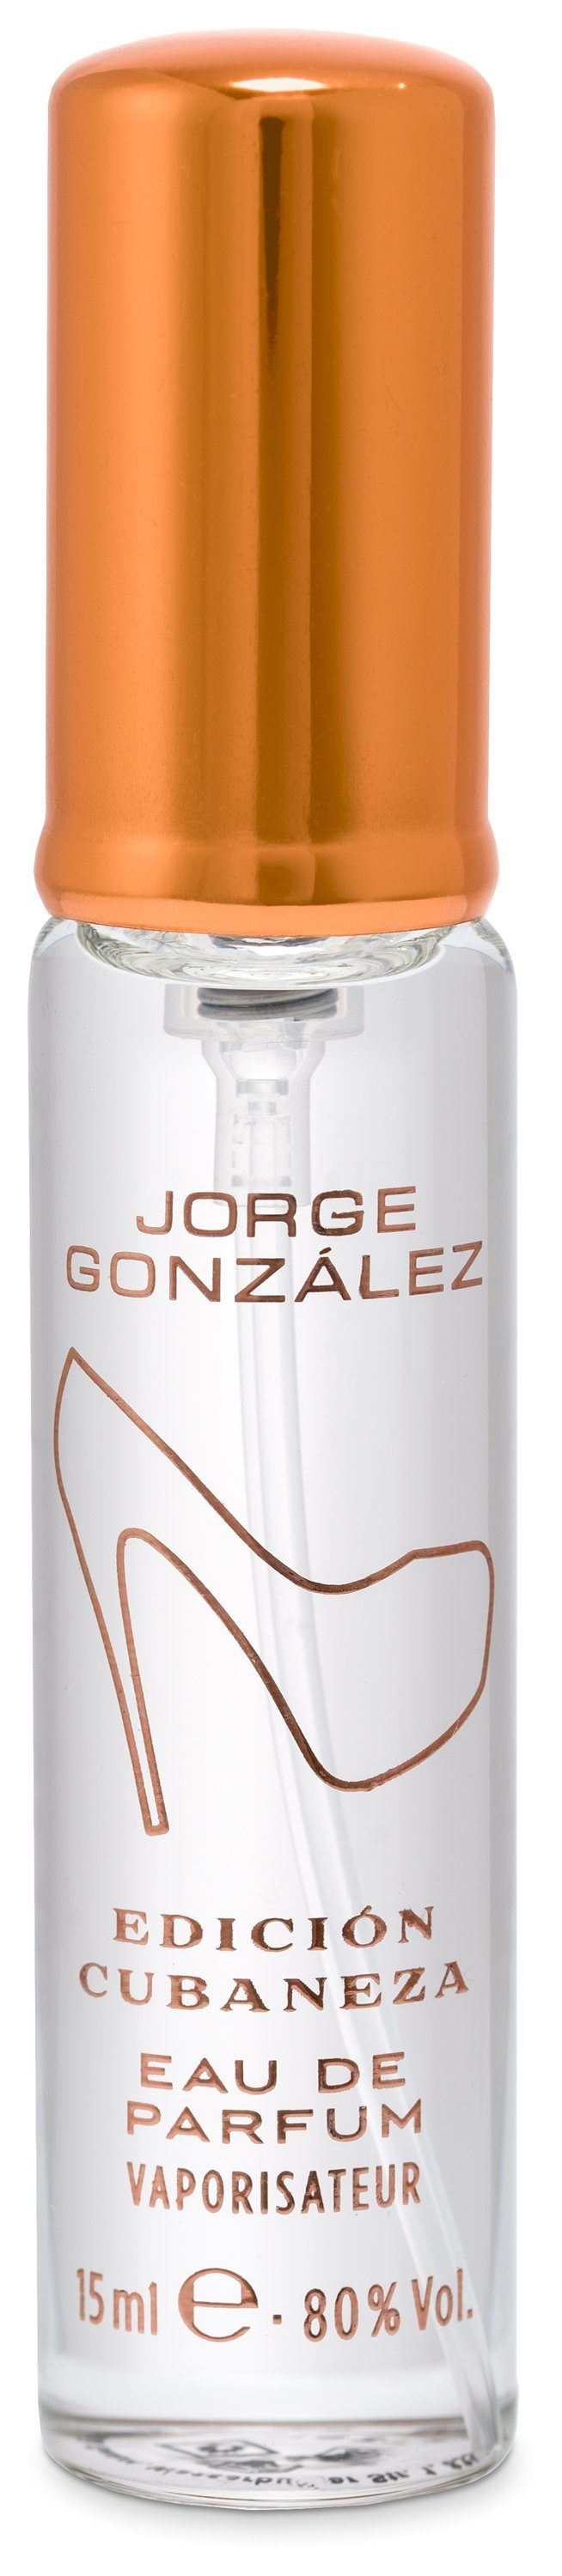 JORGE GONZÁLEZ Eau für Parfum, de de EDICIÓN CUBANEZA Damenduft, Eau 100+15ml, Duft Parfum Frauen